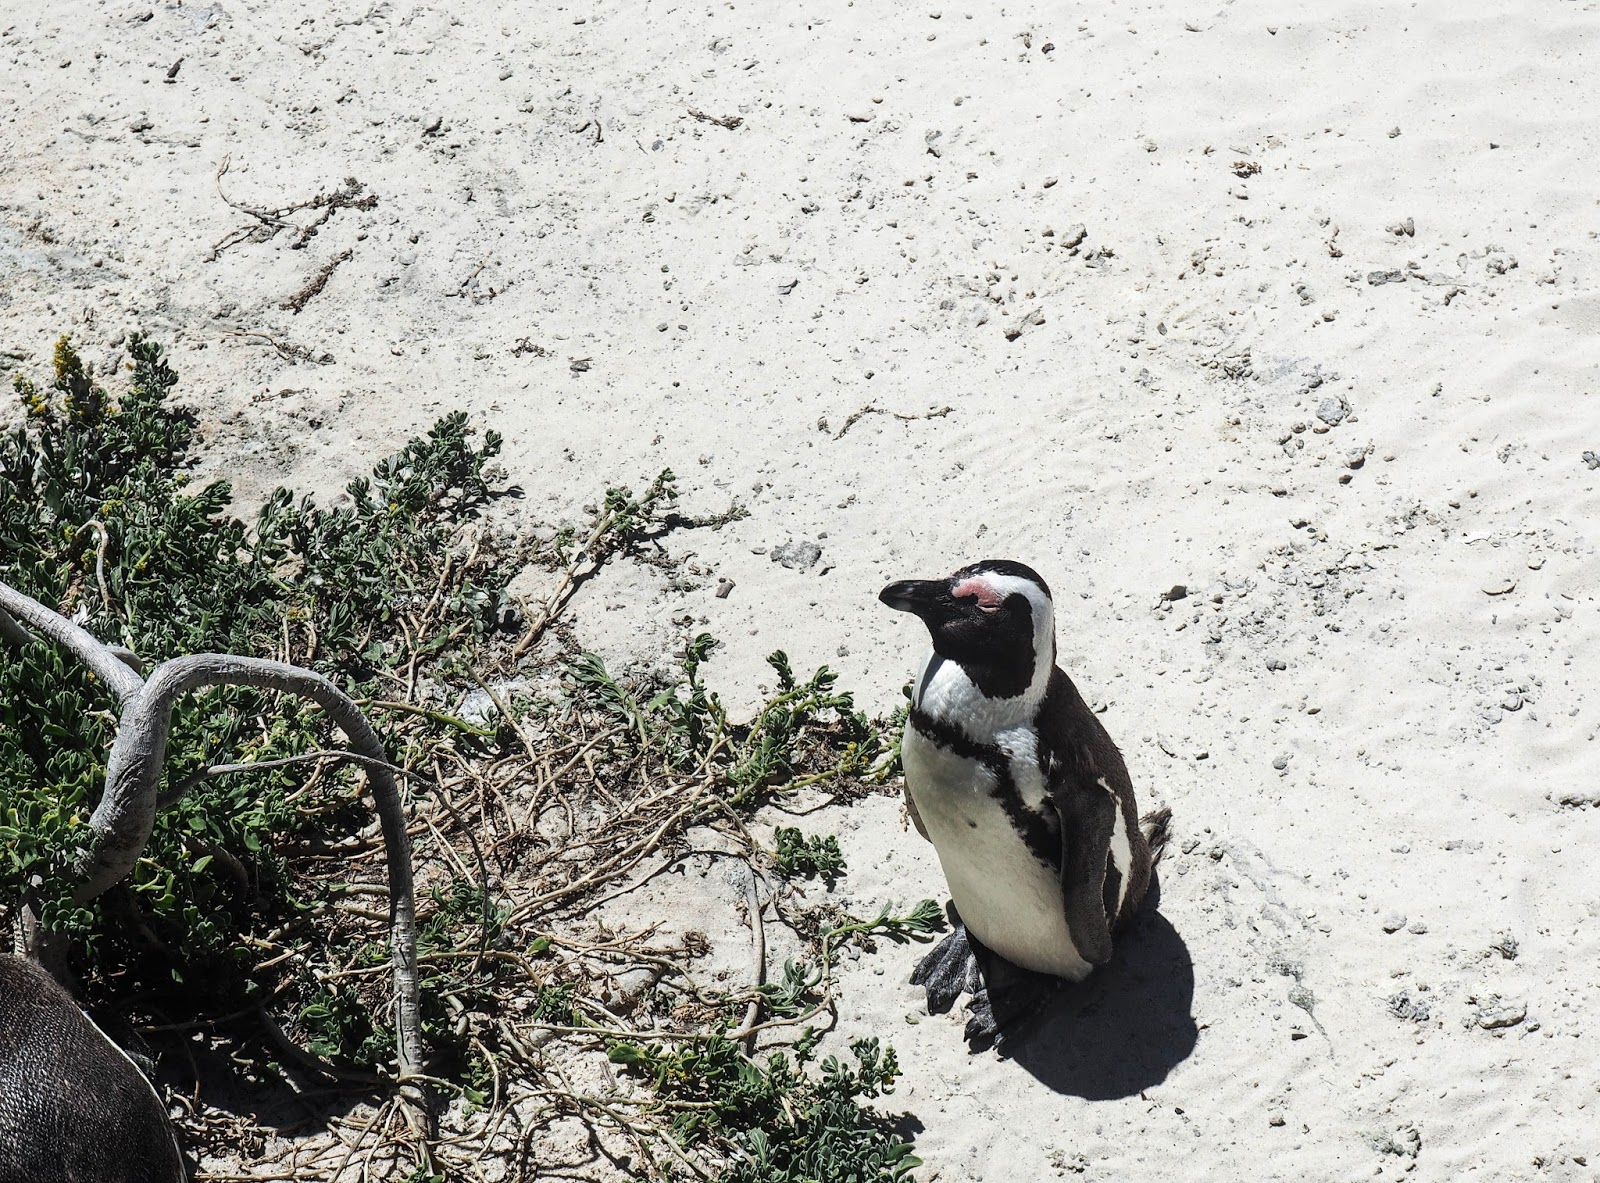 pingviini penguin kapkaupunki cape town etelä-afrikka south africa simon's town